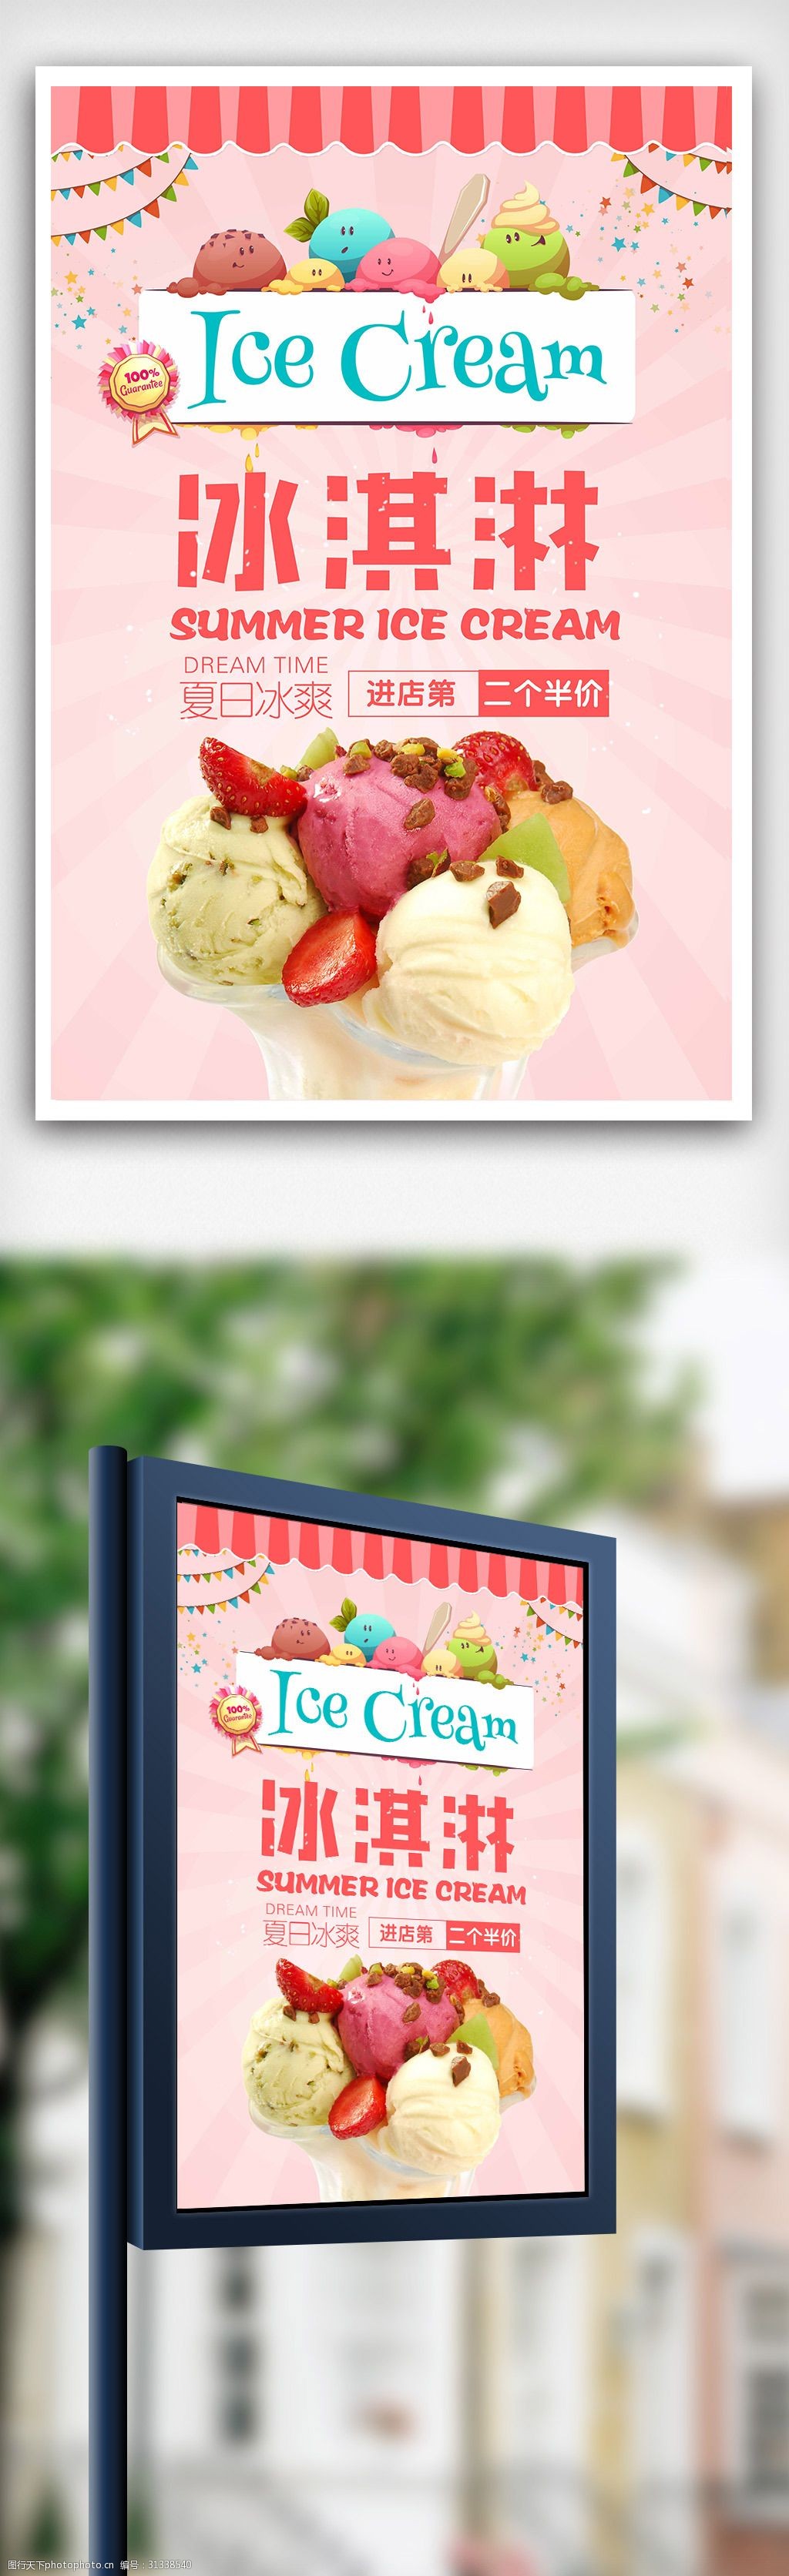 蛋卷冰淇淋图片海报图片